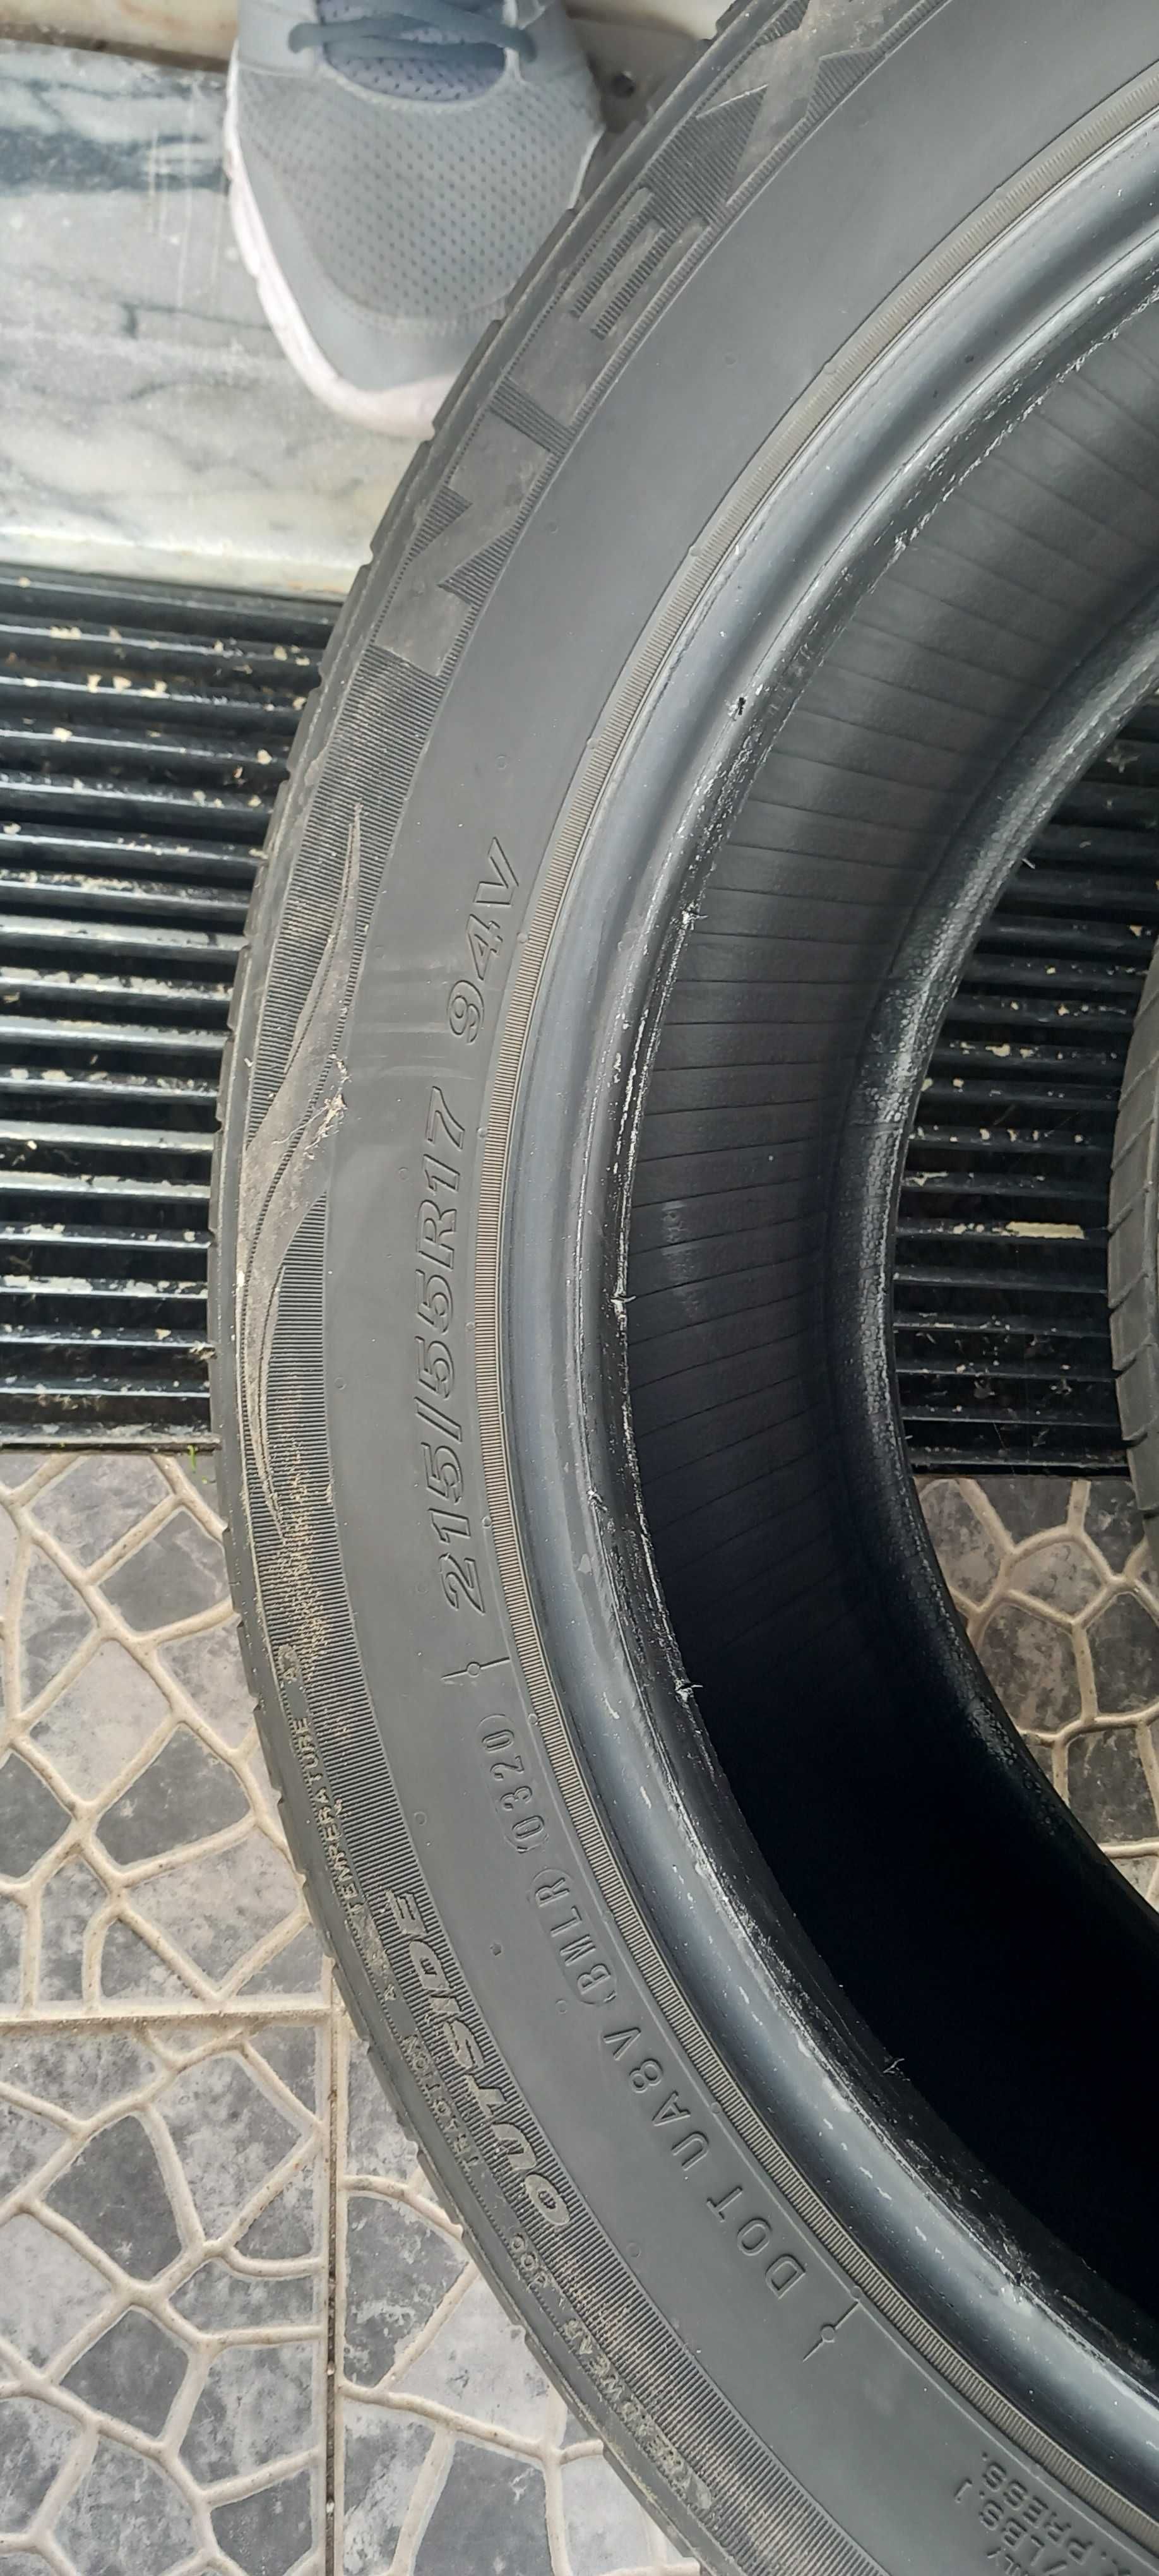 2 pneus usados  marca nfera 215/55r17